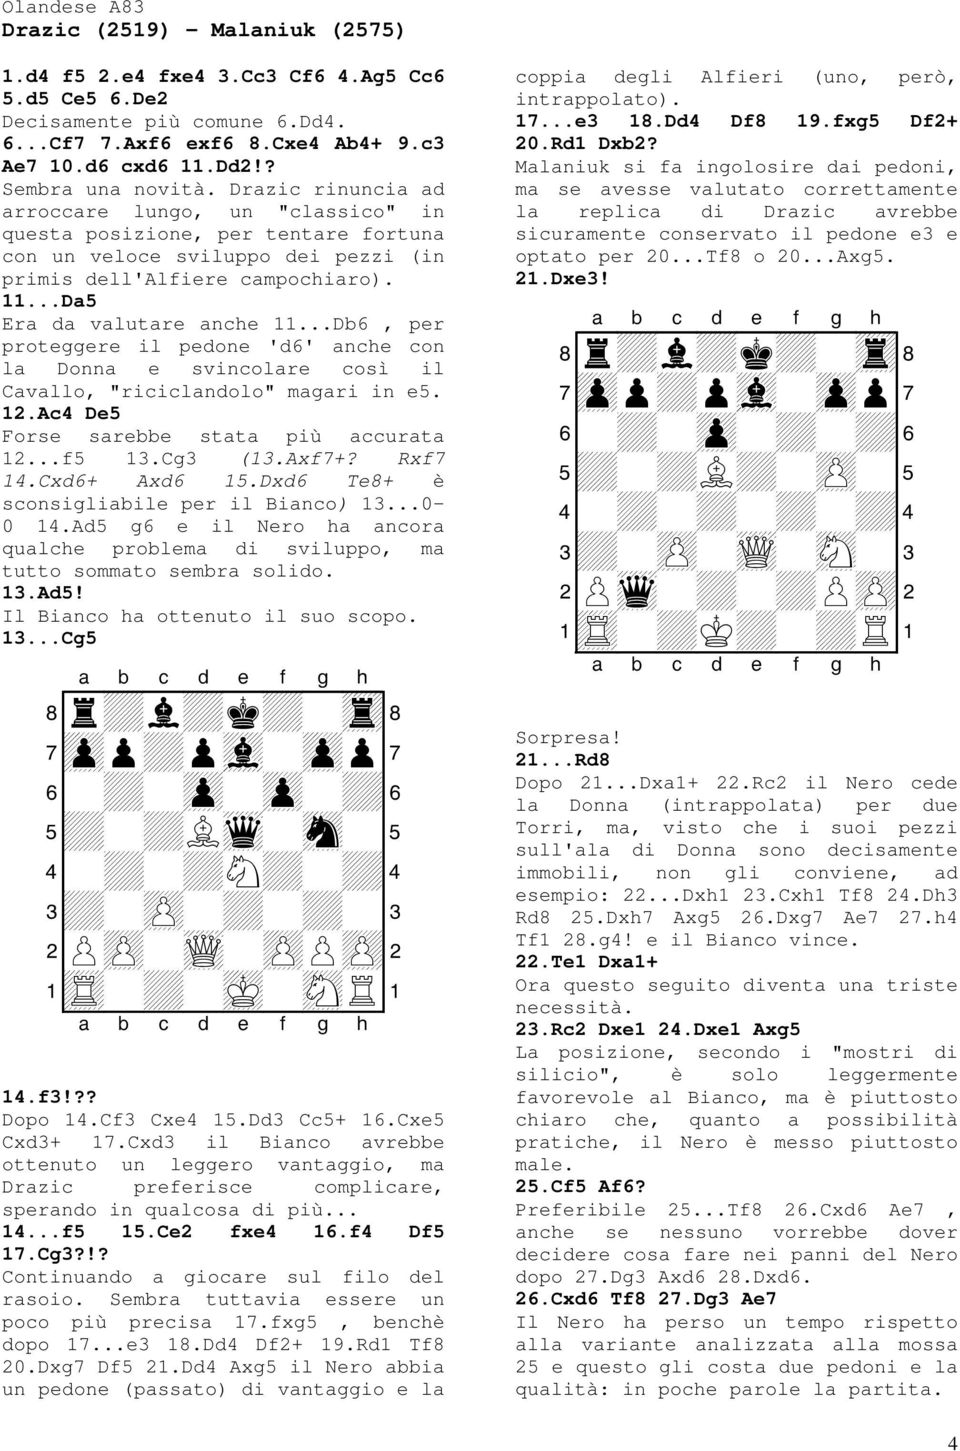 ..Da5 Era da valutare anche 11...Db6, per proteggere il pedone 'd6' anche con la Donna e svincolare così il Cavallo, "riciclandolo" magari in e5. 12.Ac4 De5 Forse sarebbe stata più accurata 12...f5 13.